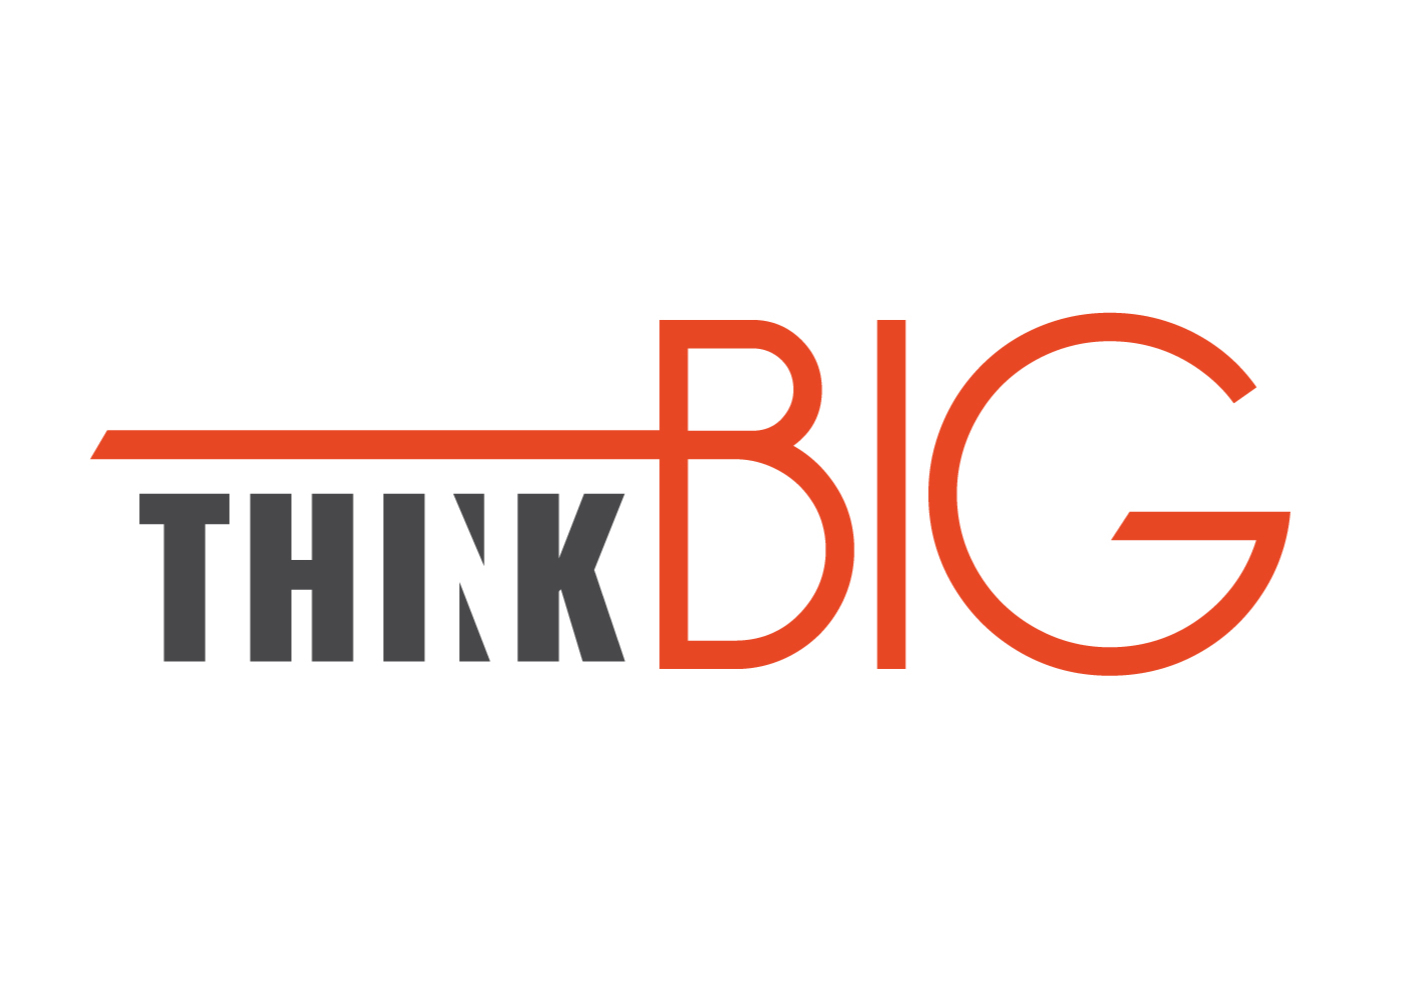 think-big